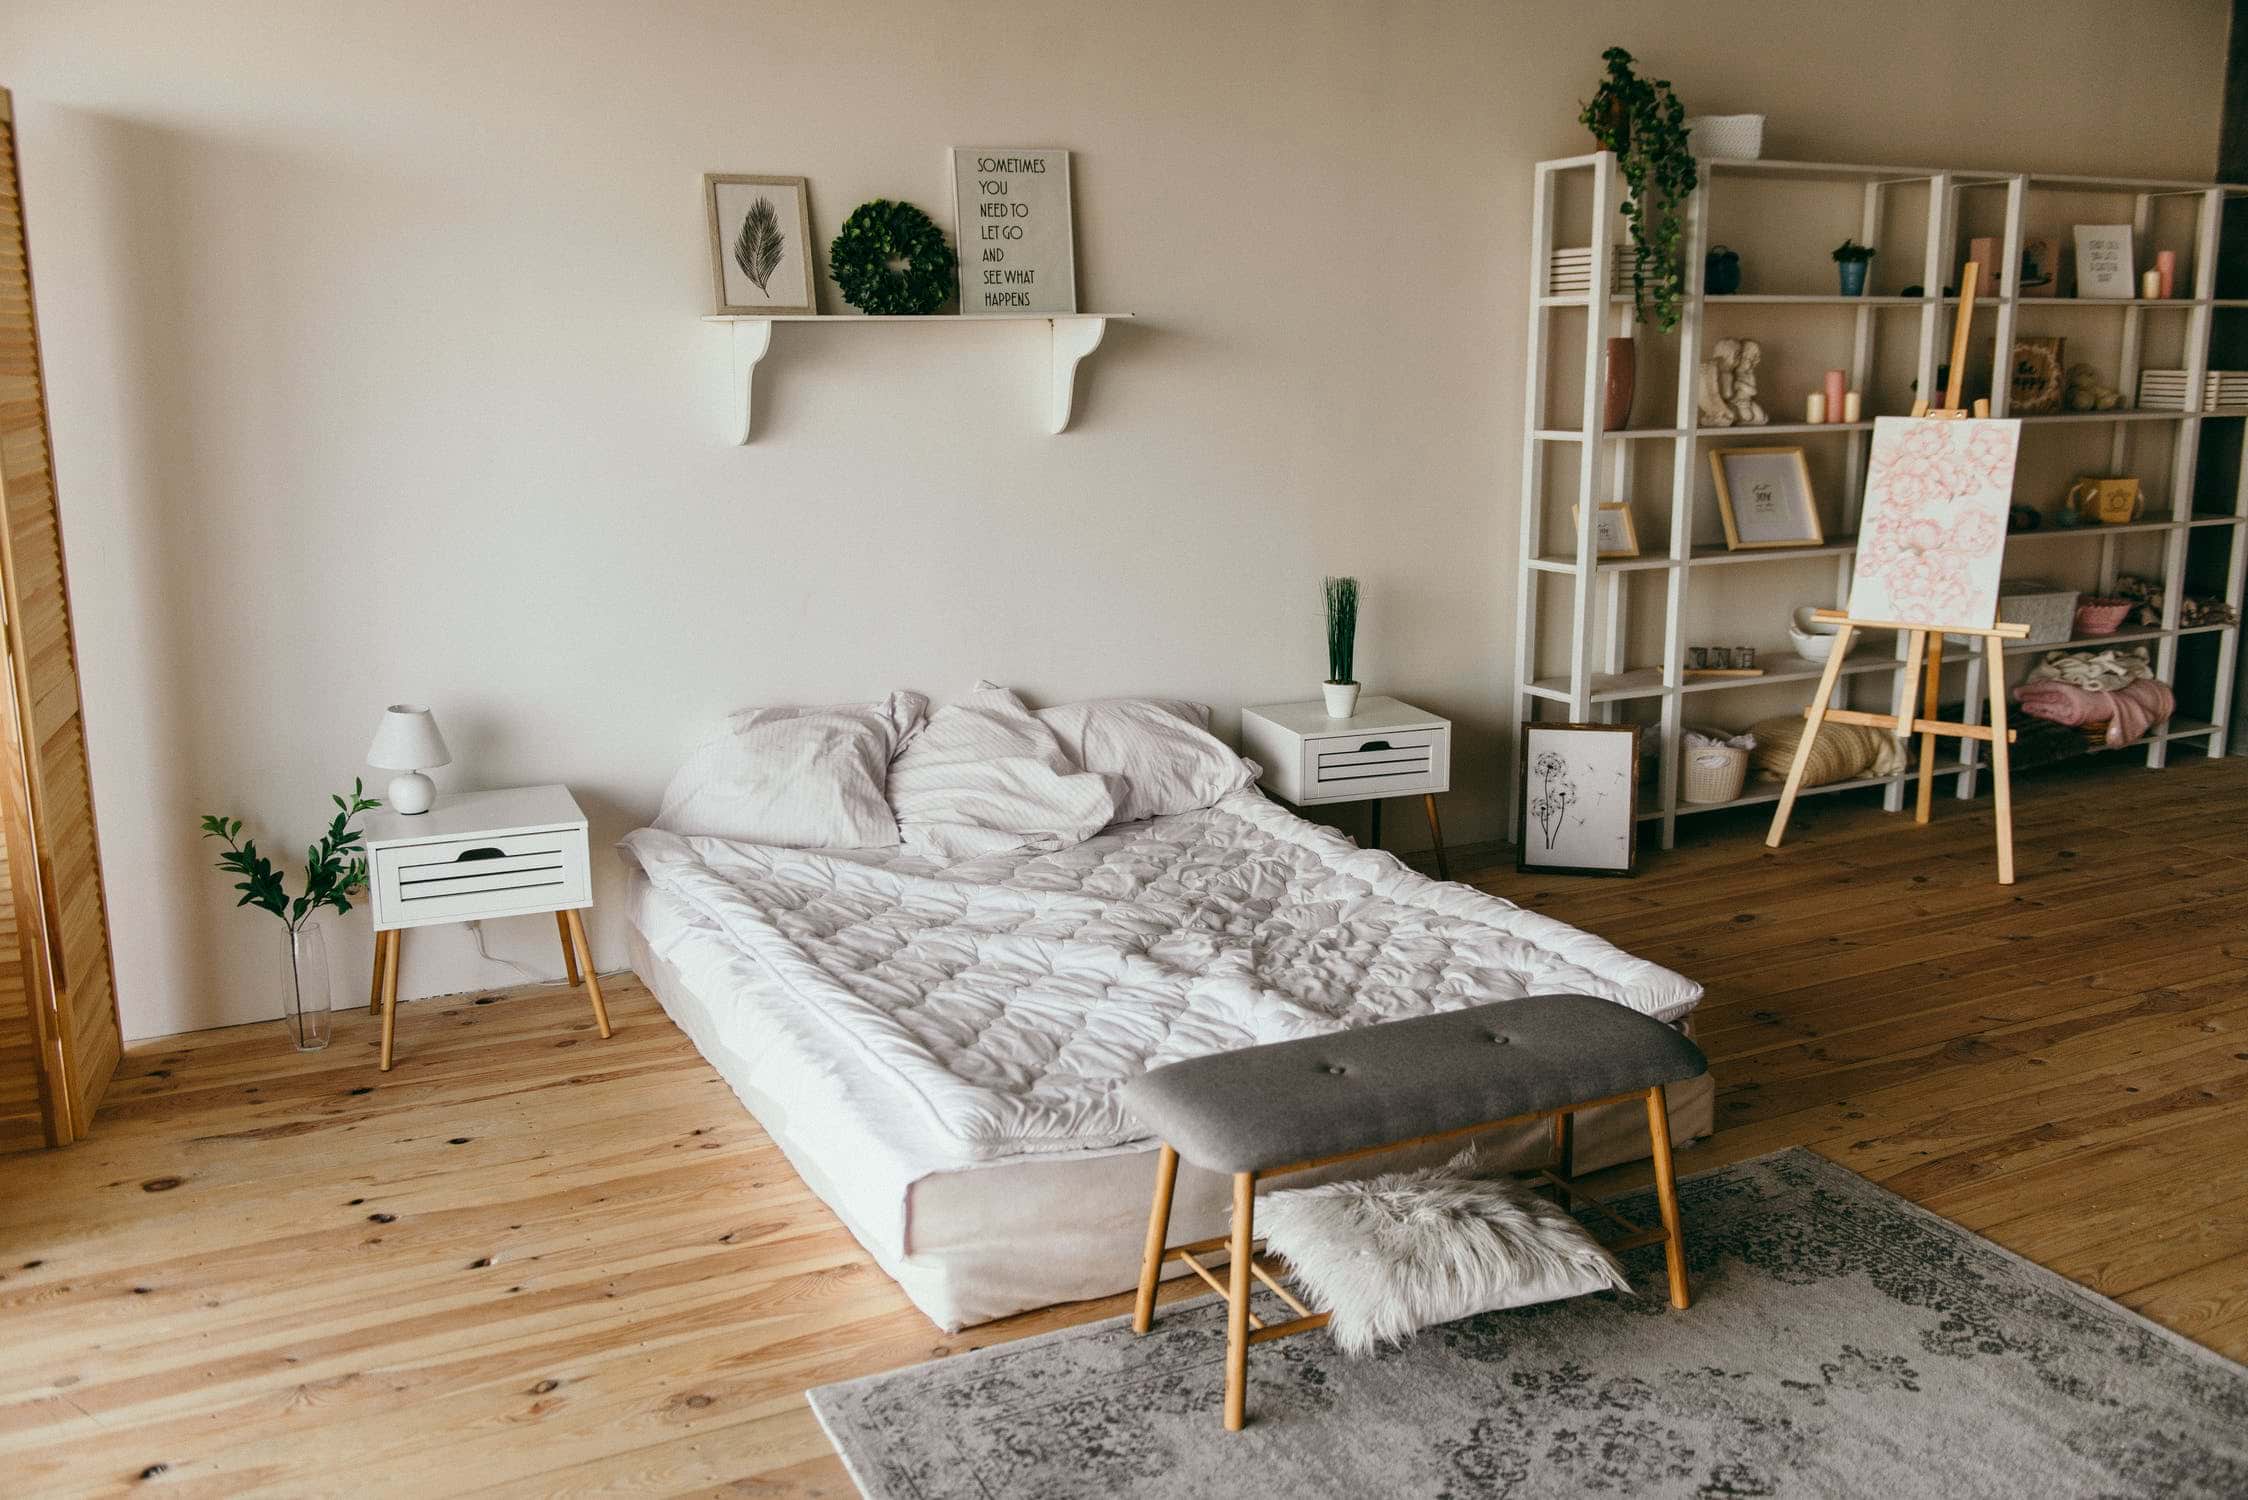 Dormitor în stil scandinav. Cum alegi mobila și accesoriile